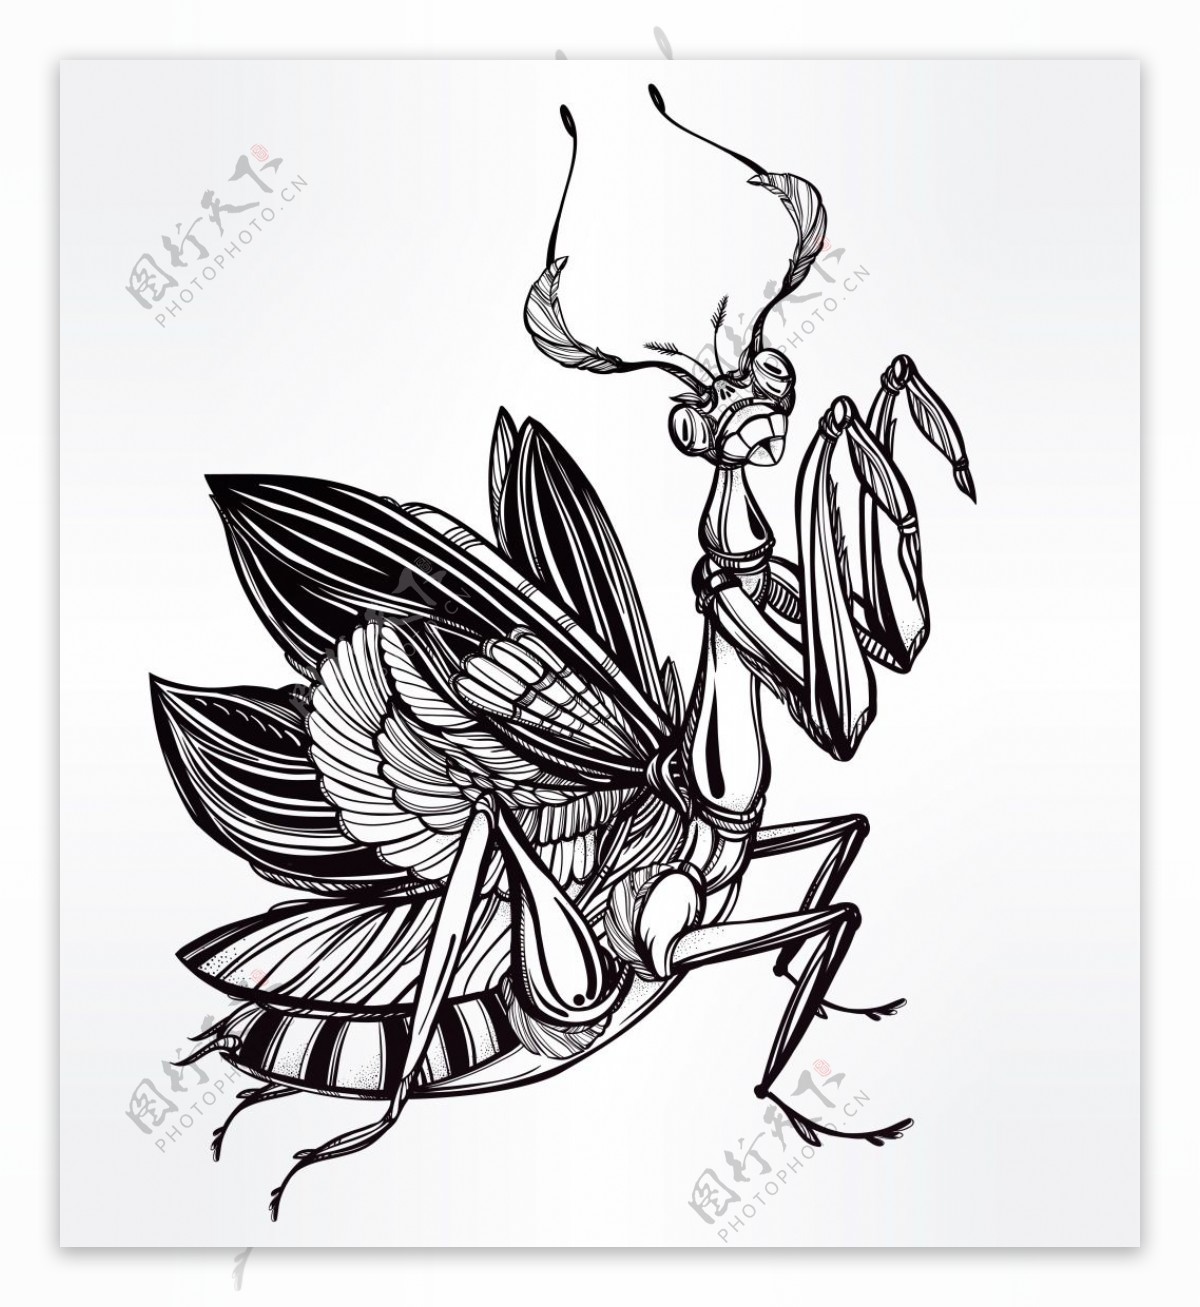 黑白花纹创意螳螂图案